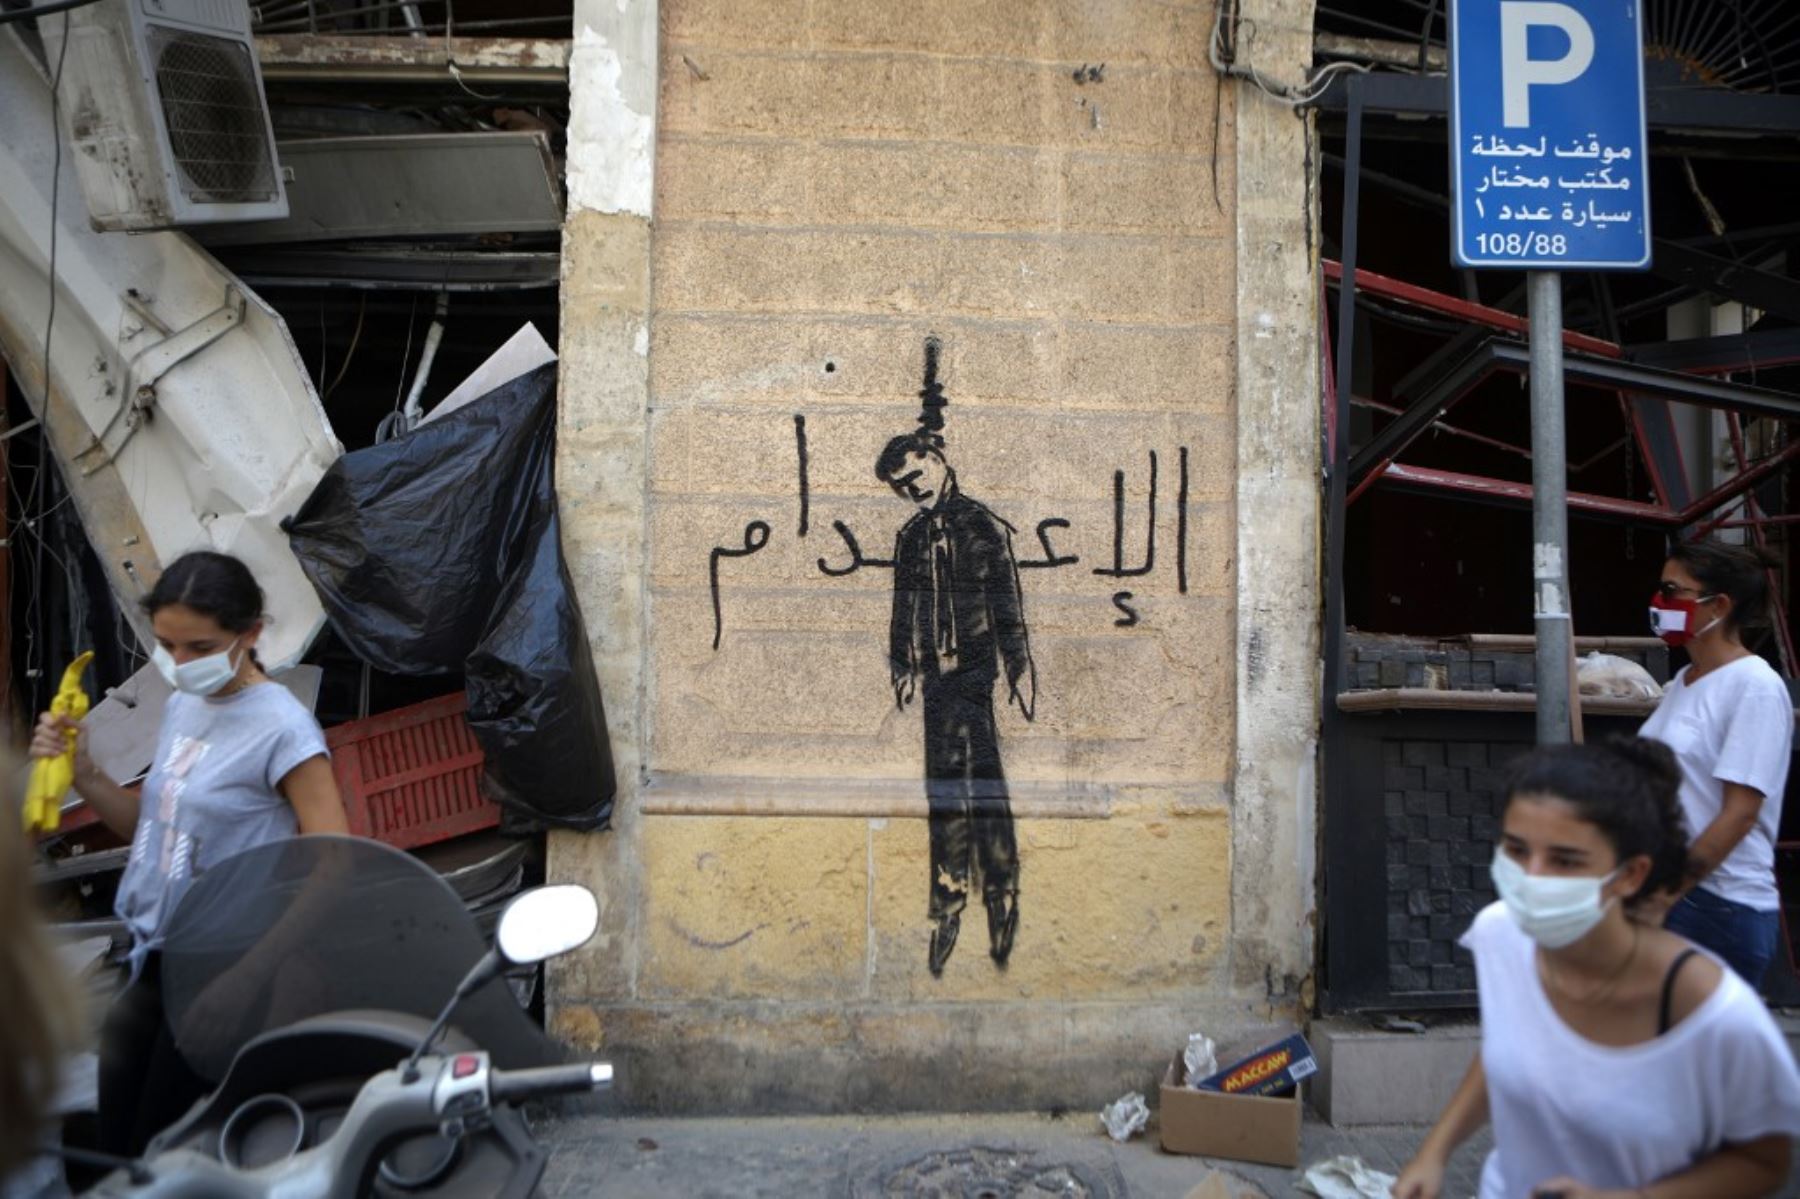 Miembros de la sociedad civil libanesa que llevan escobas usadas para limpiar escombros, pasan junto a una pintura mural que representa a un político ahorcado en el vecindario de Mar Mikhael, Beirut, parcialmente dañado. Foto: AFP